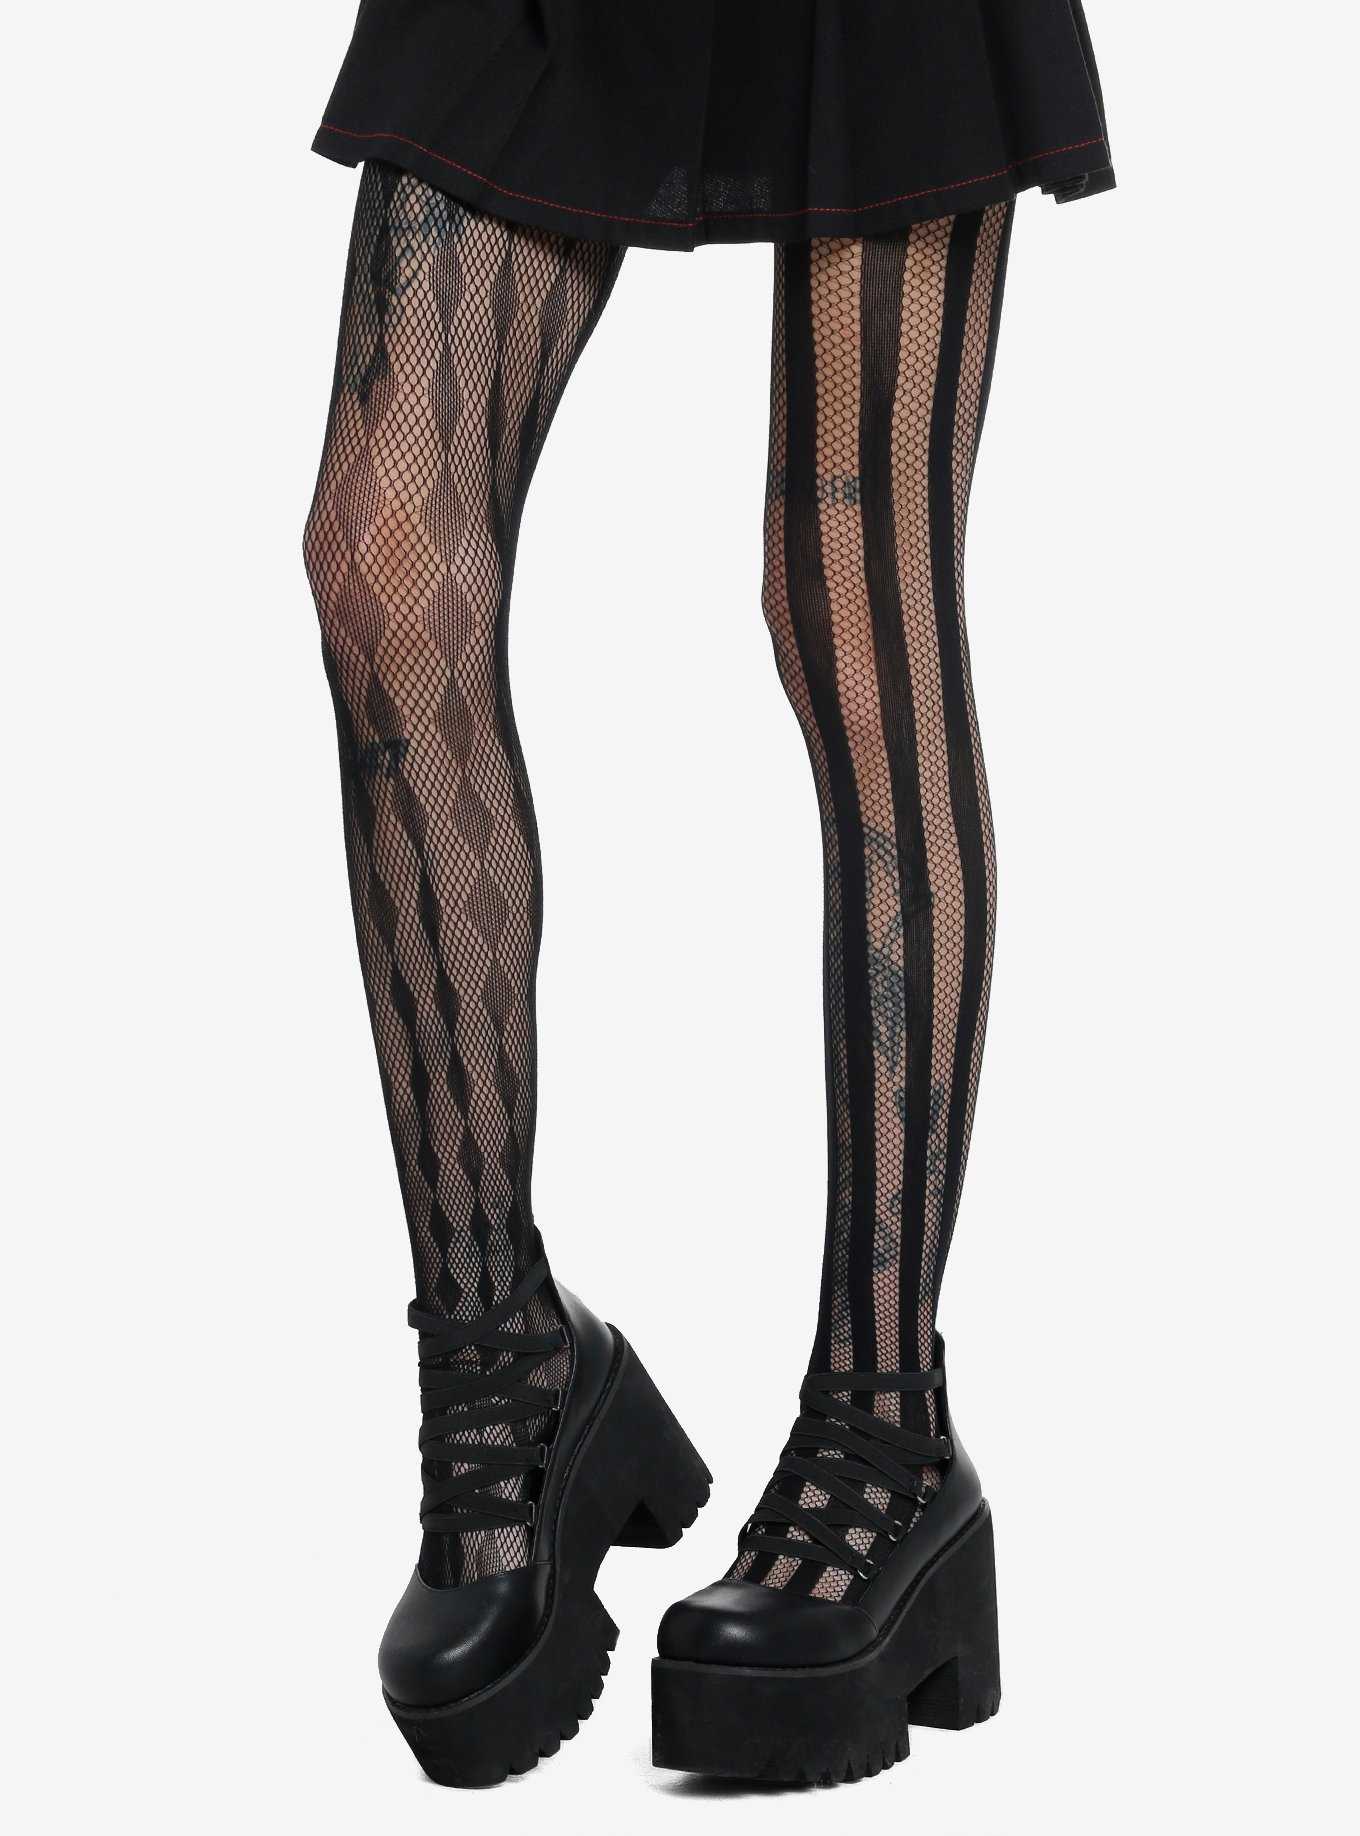  Leg Avenue Women Daisy Nylon Sheer Tights. tights